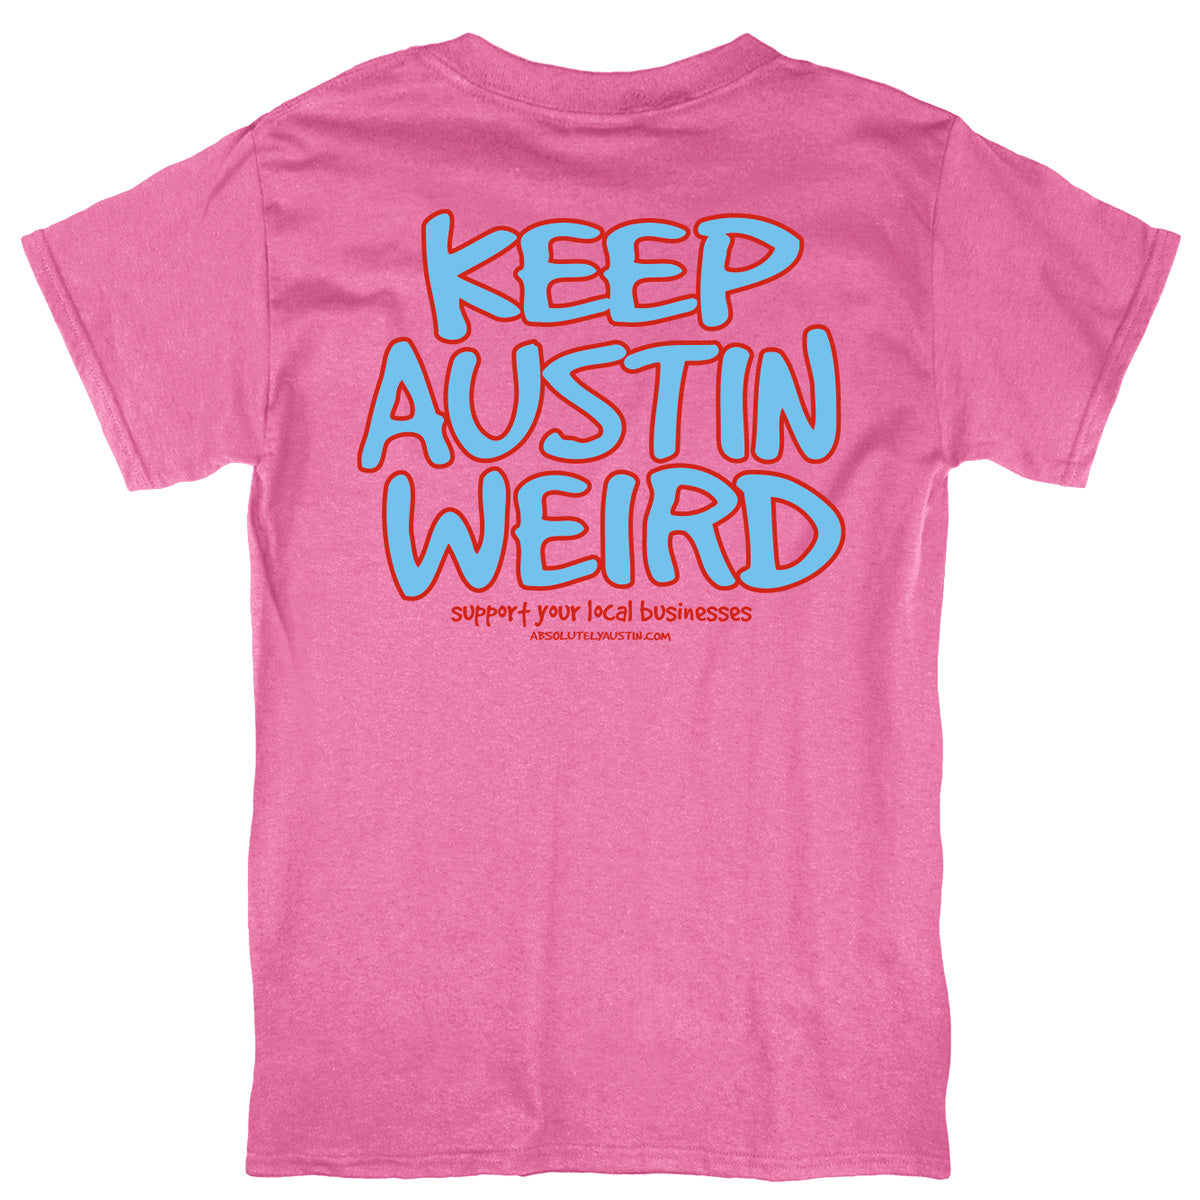 Keep Austin Weird® Tricolor Youth Tee